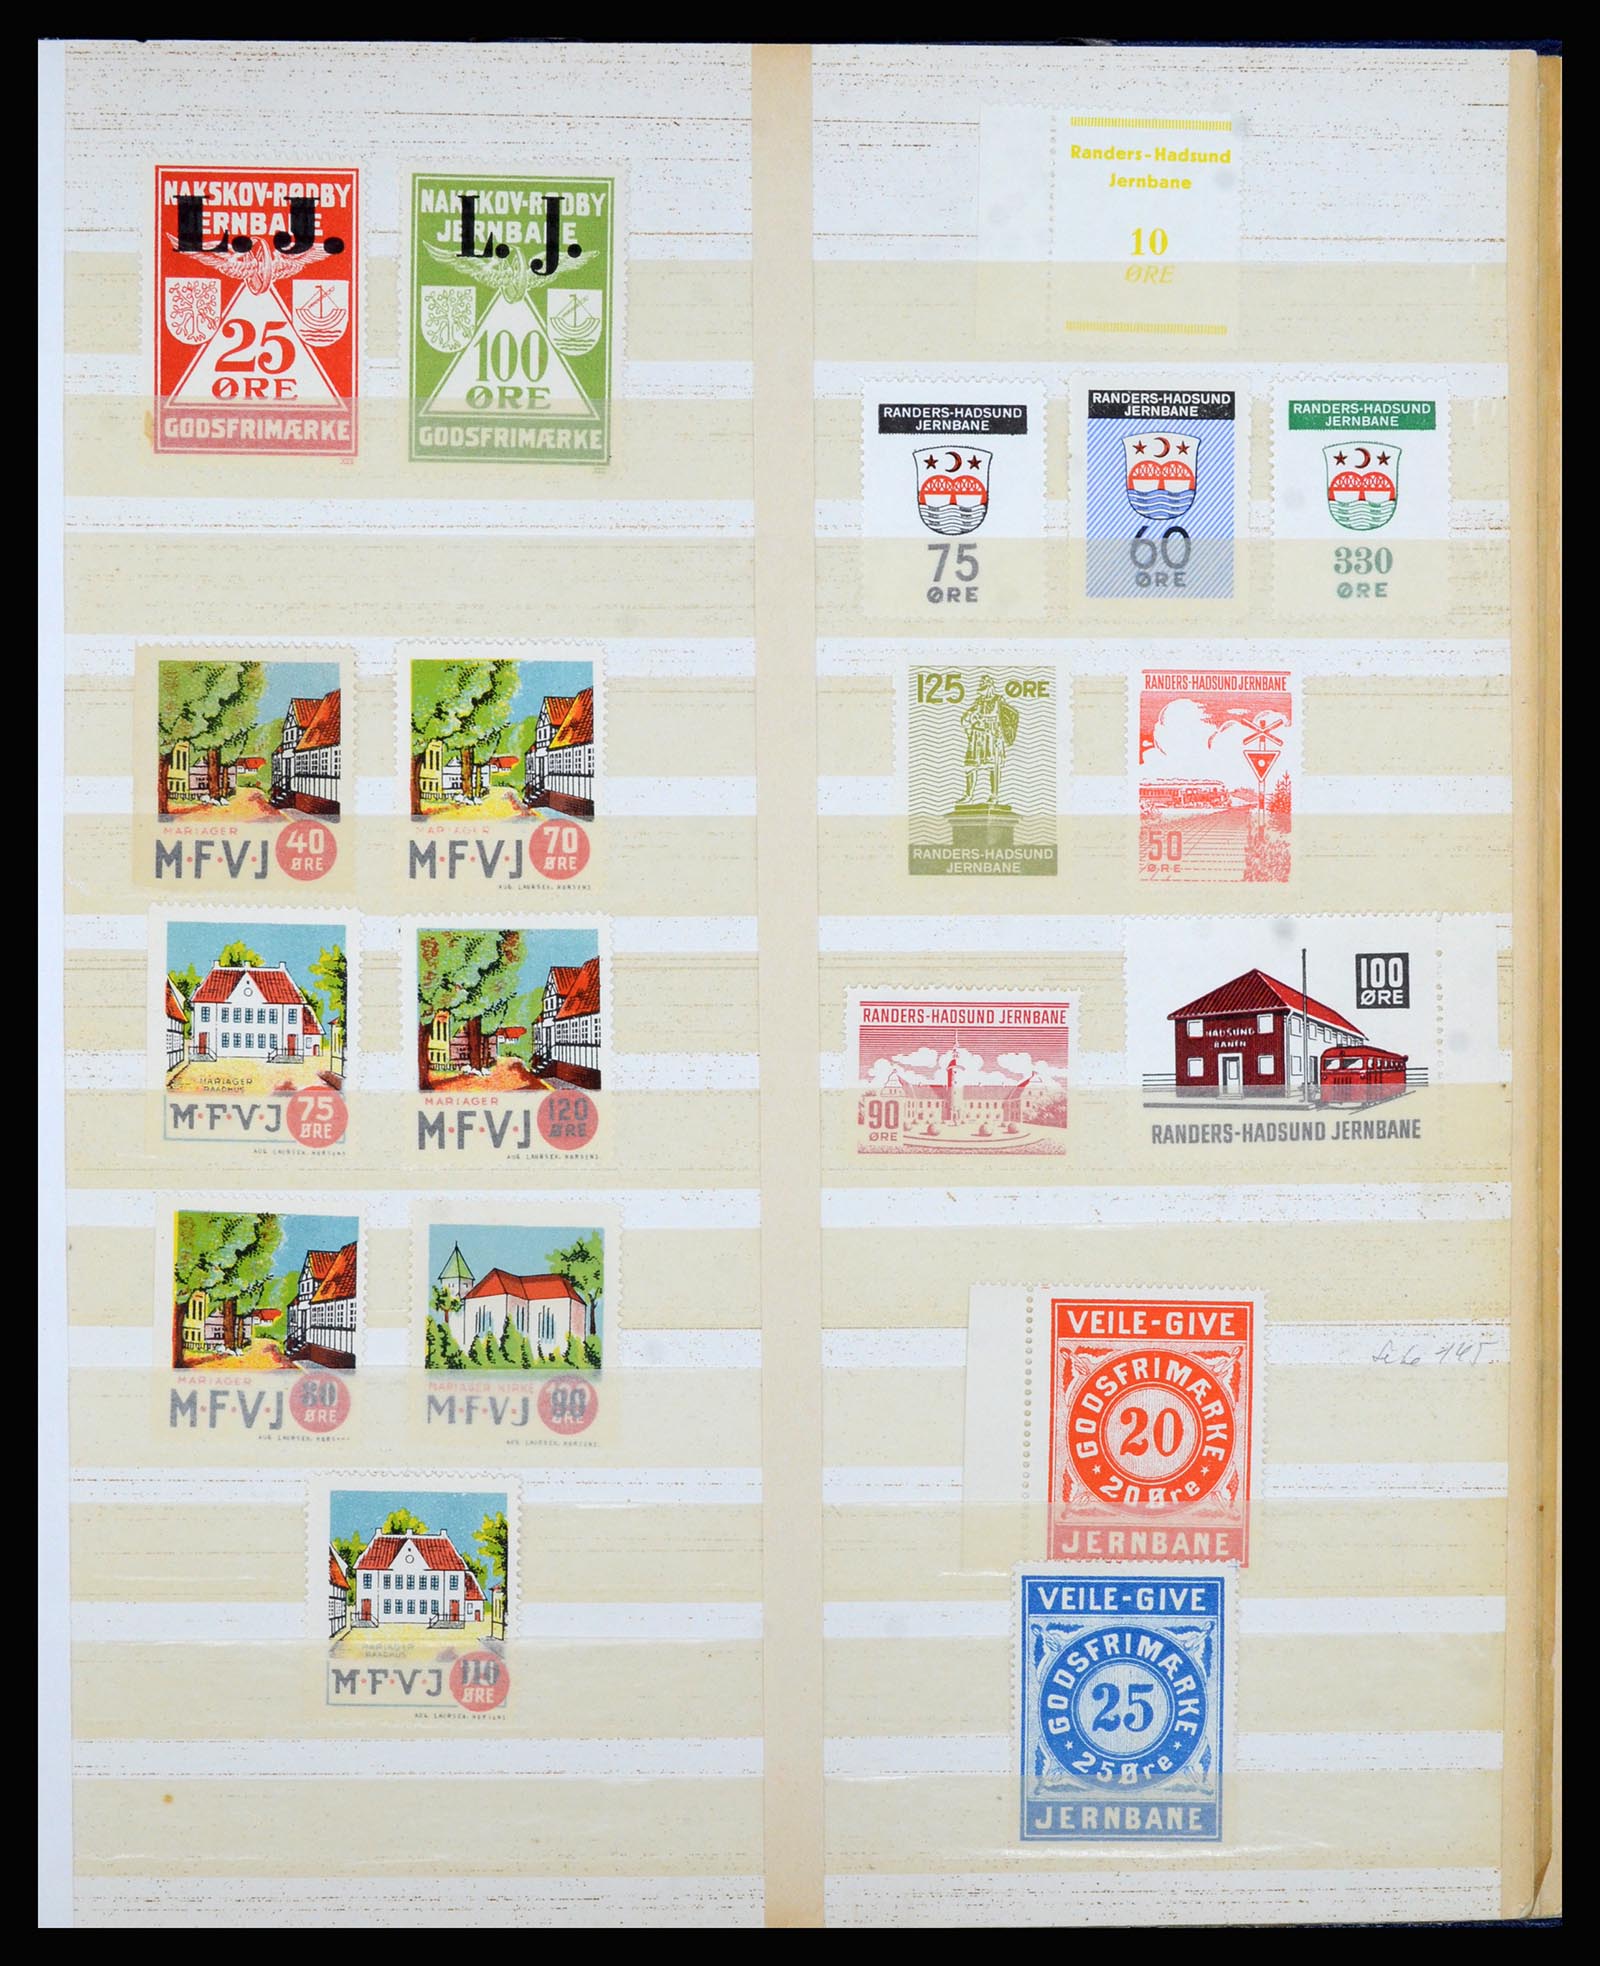 36767 017 - Postzegelverzameling 36767 Denemarken spoorwegzegels.